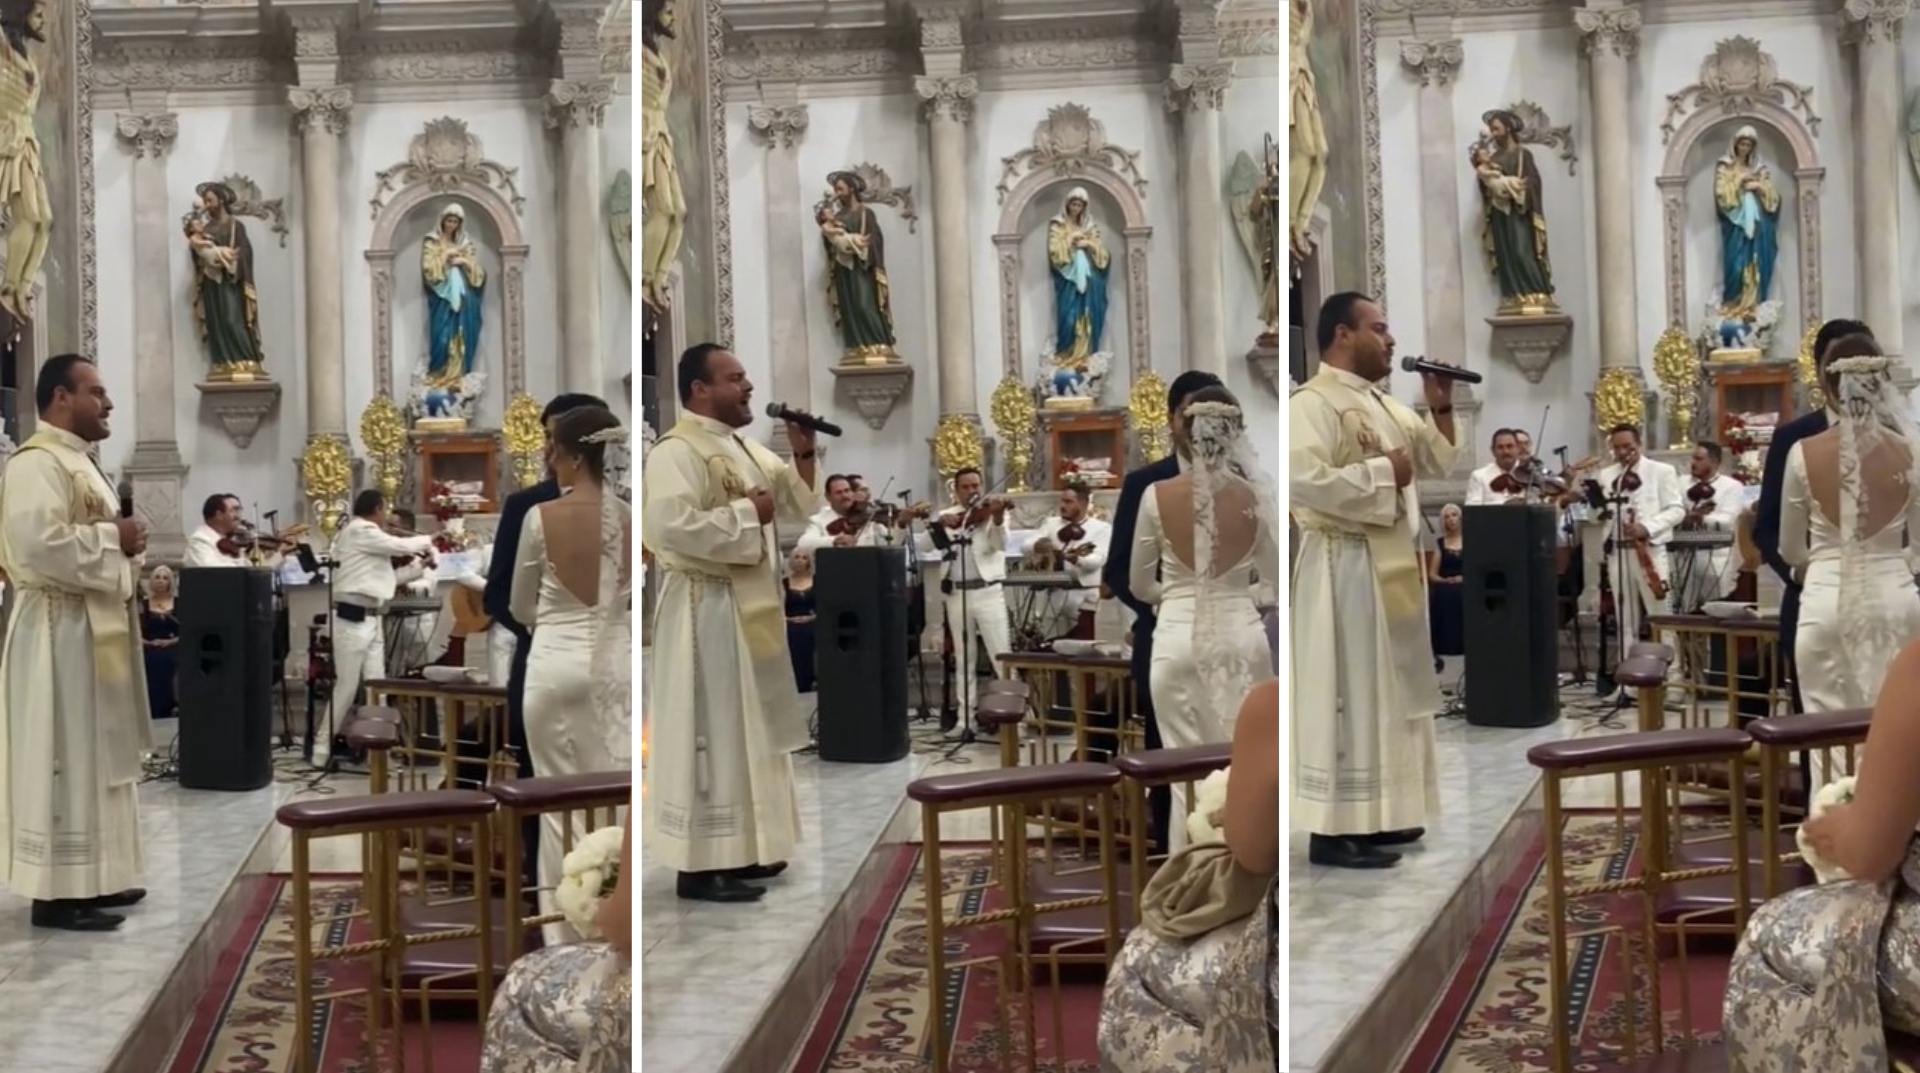 Así hasta yo voy a misa”: Sacerdote de Jalisco se viralizó en Tik Tok al  cantar 'Mi razón de ser' en una boda - Infobae